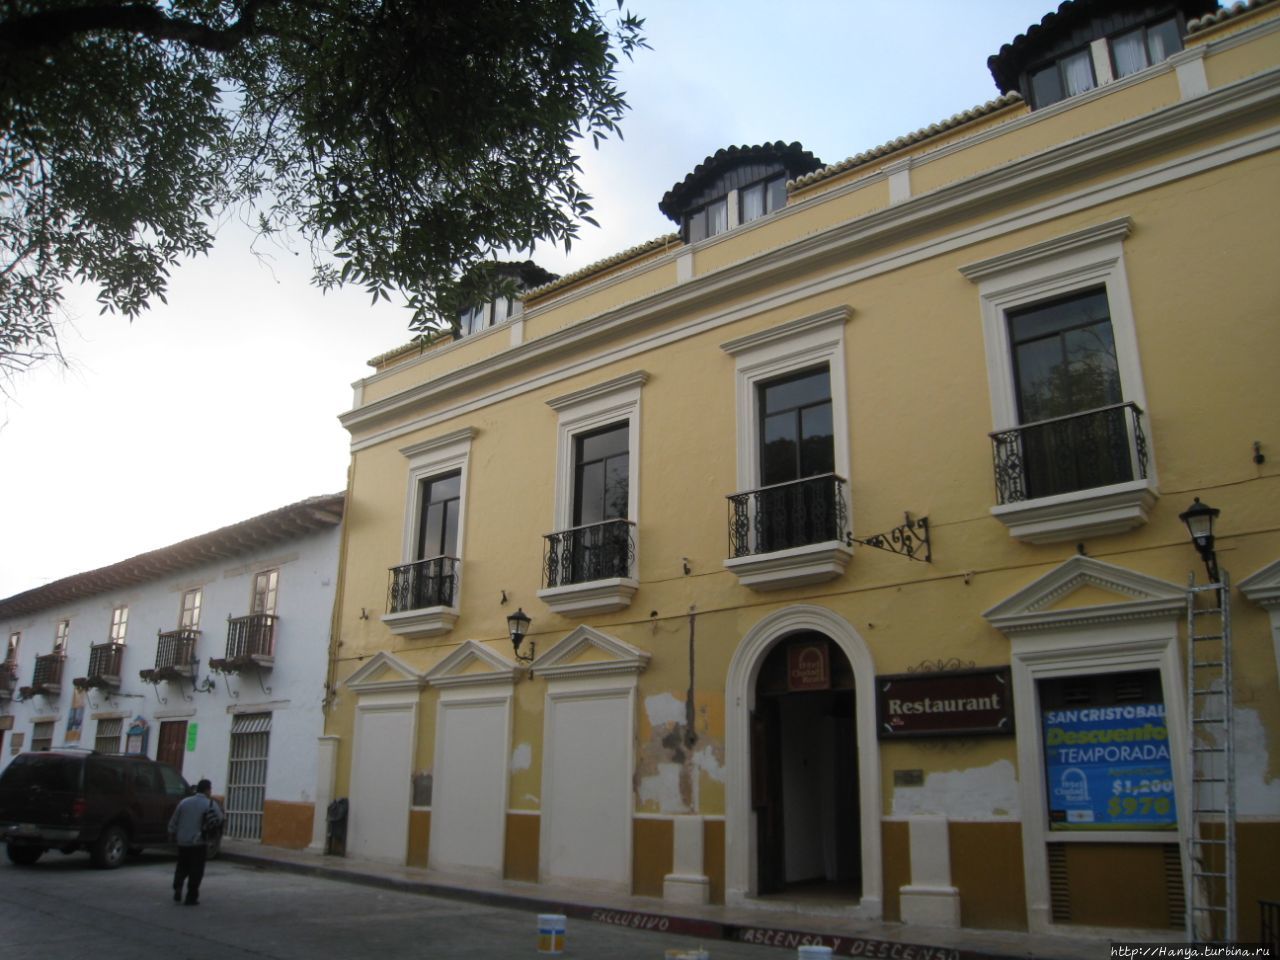 Отель Cuidad Real Centro Historico 3* / Hotel Cuidad Real Centro Historico 3*